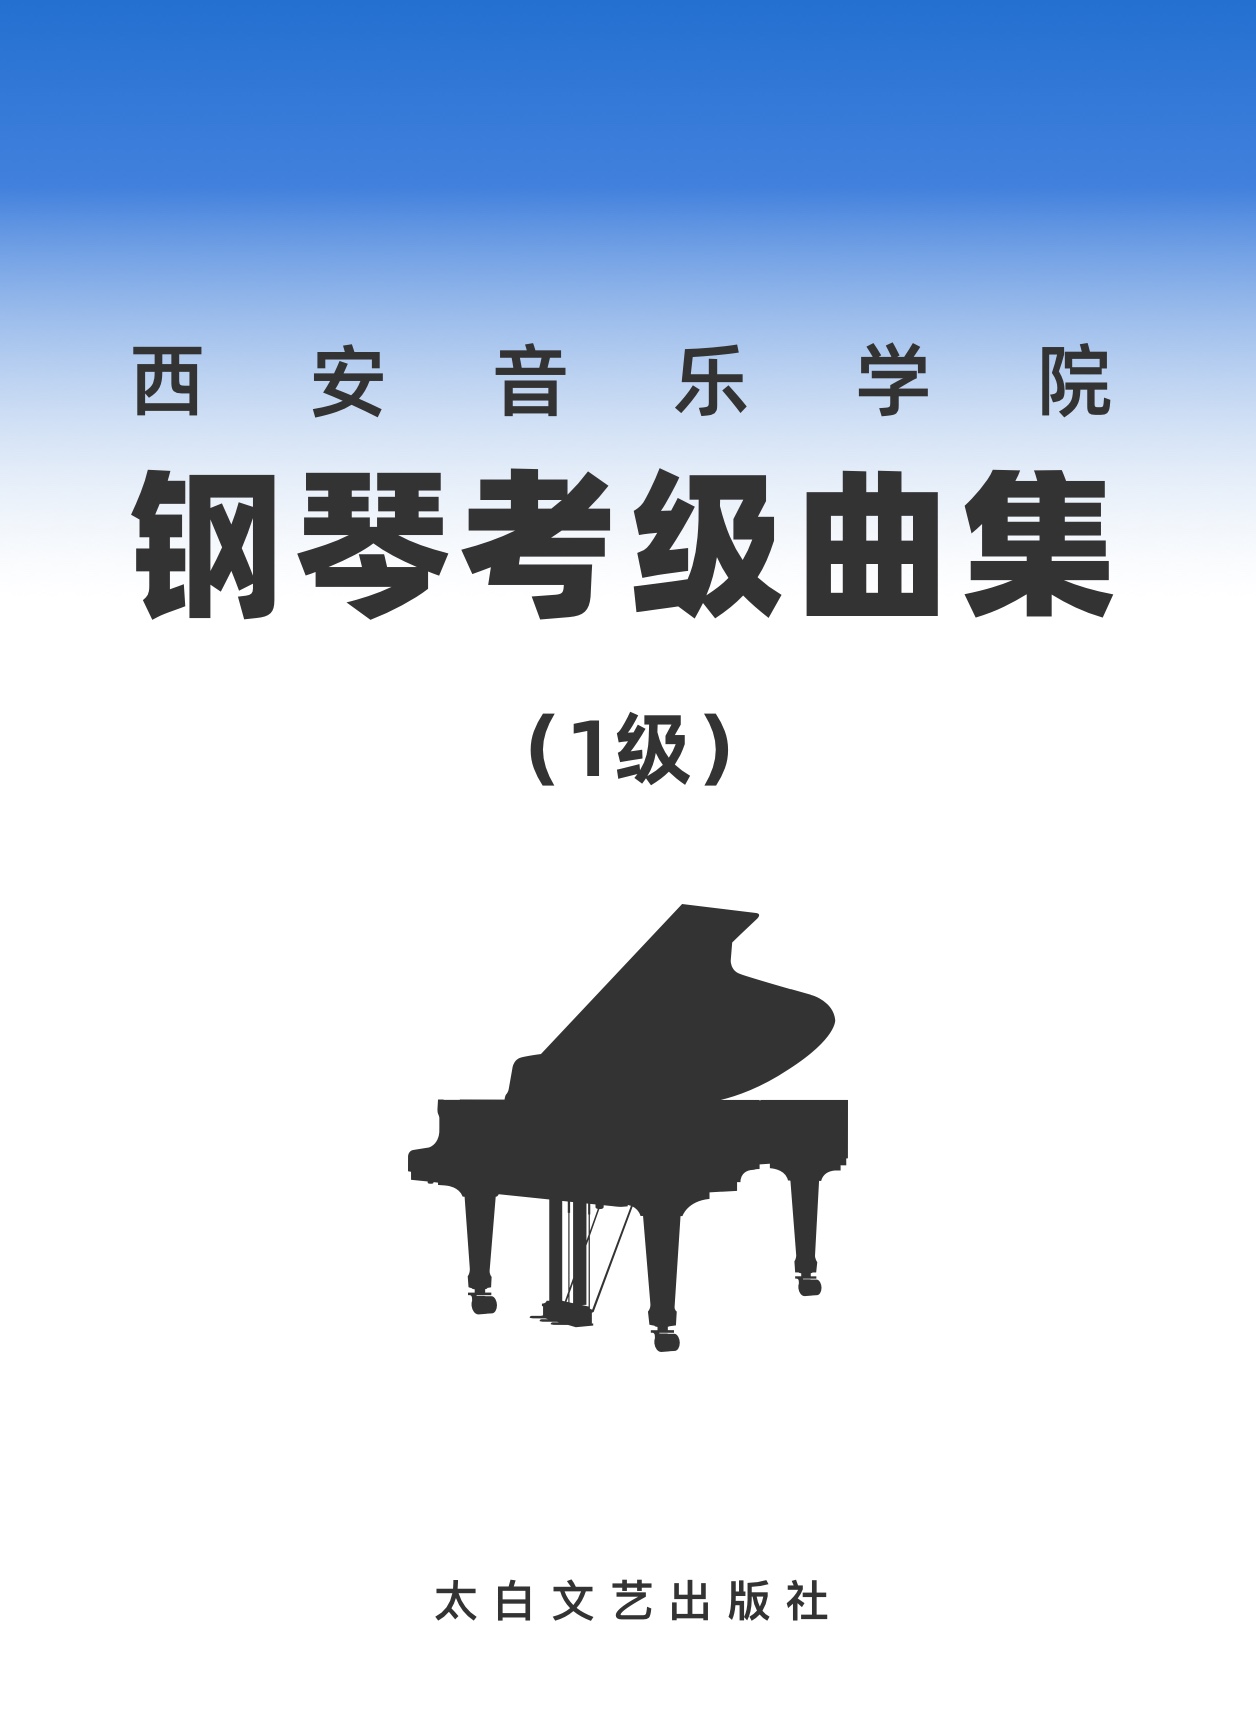 09第一级 F大调小步舞曲-钢琴谱